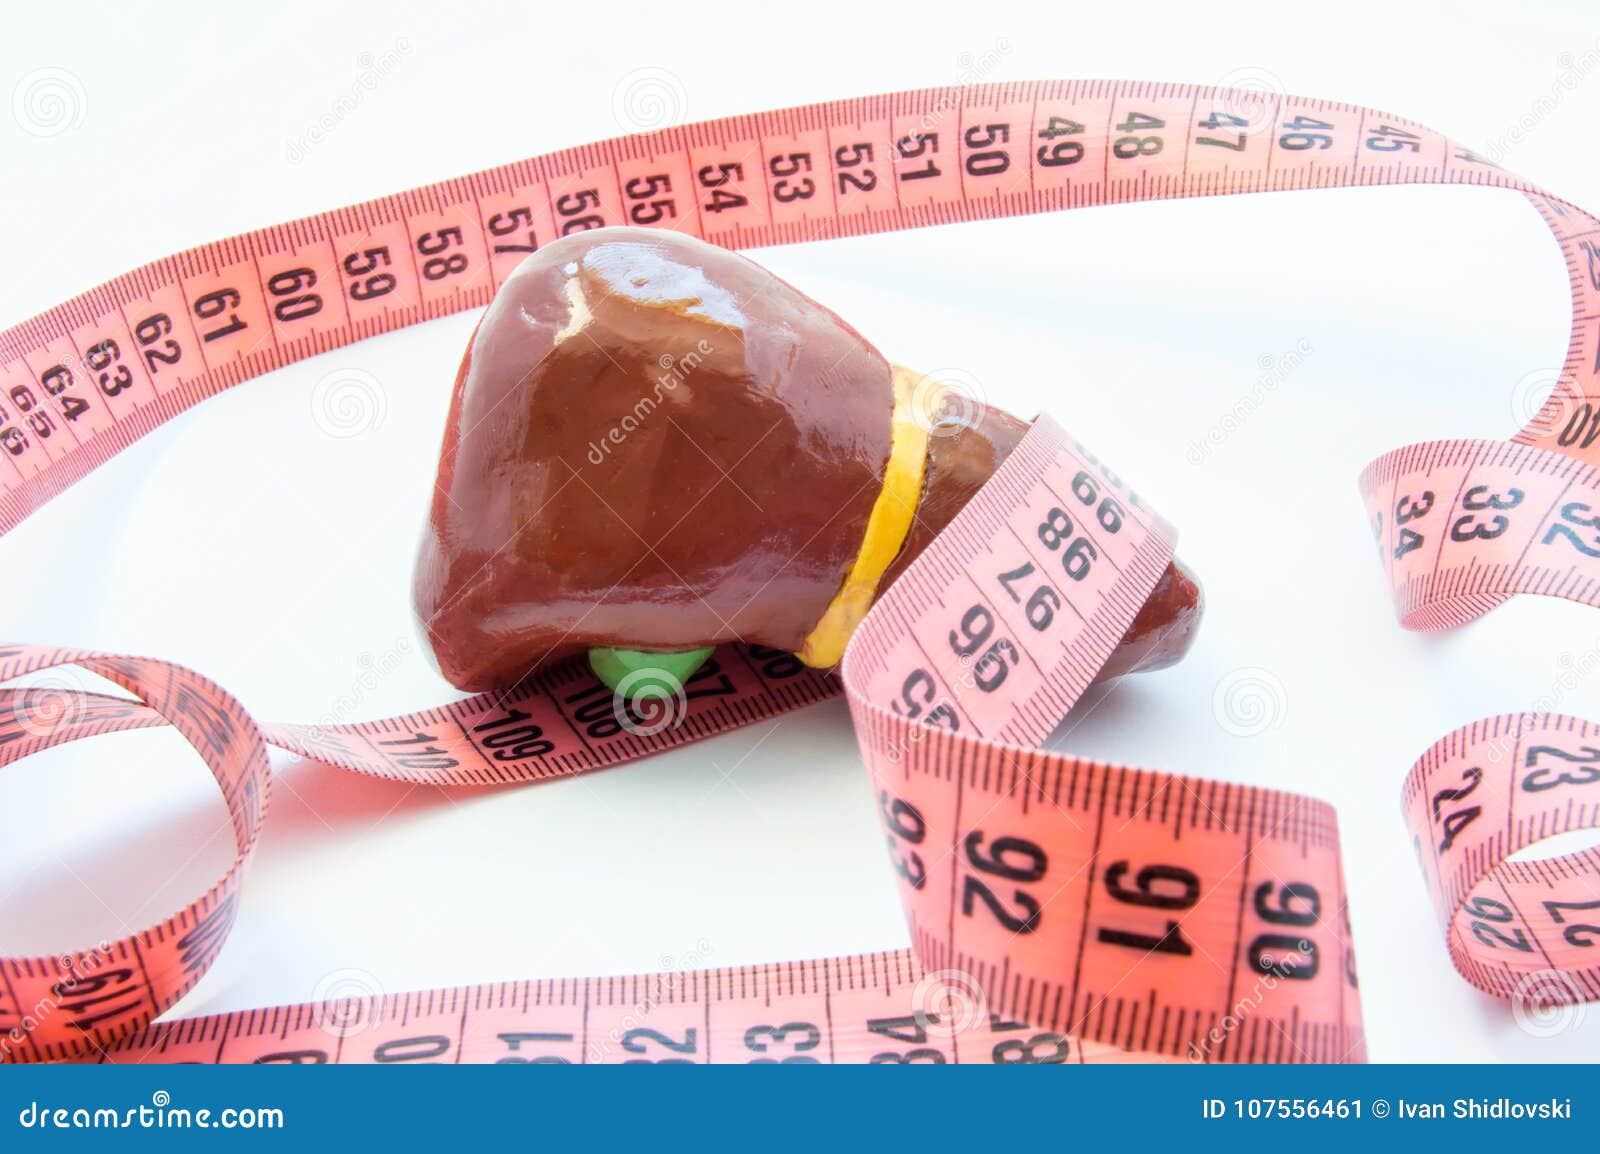 concept photo enlarged liver or gallbladder. anatomical liver figure next to measuring tape. visualization enlarge organ and bile